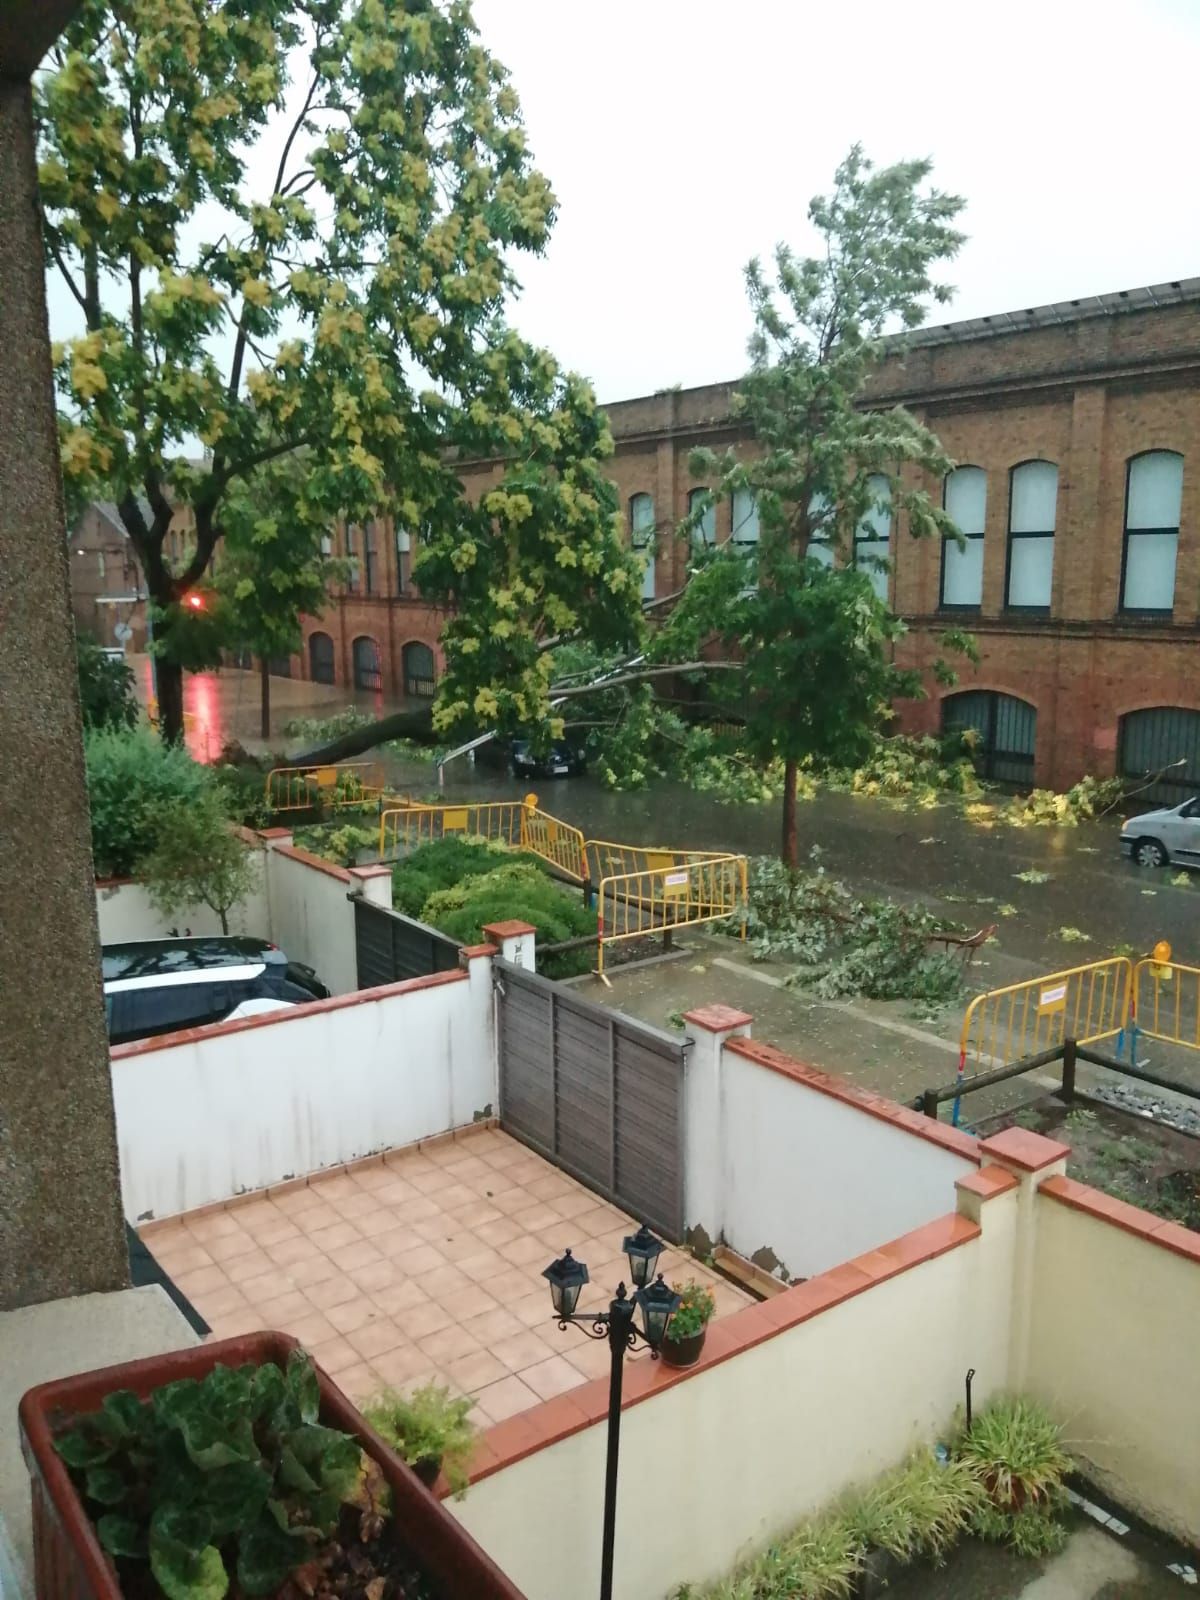 Vista de l'arbre caigut sobre el cotxe des d'una casa del carrer Cadmo